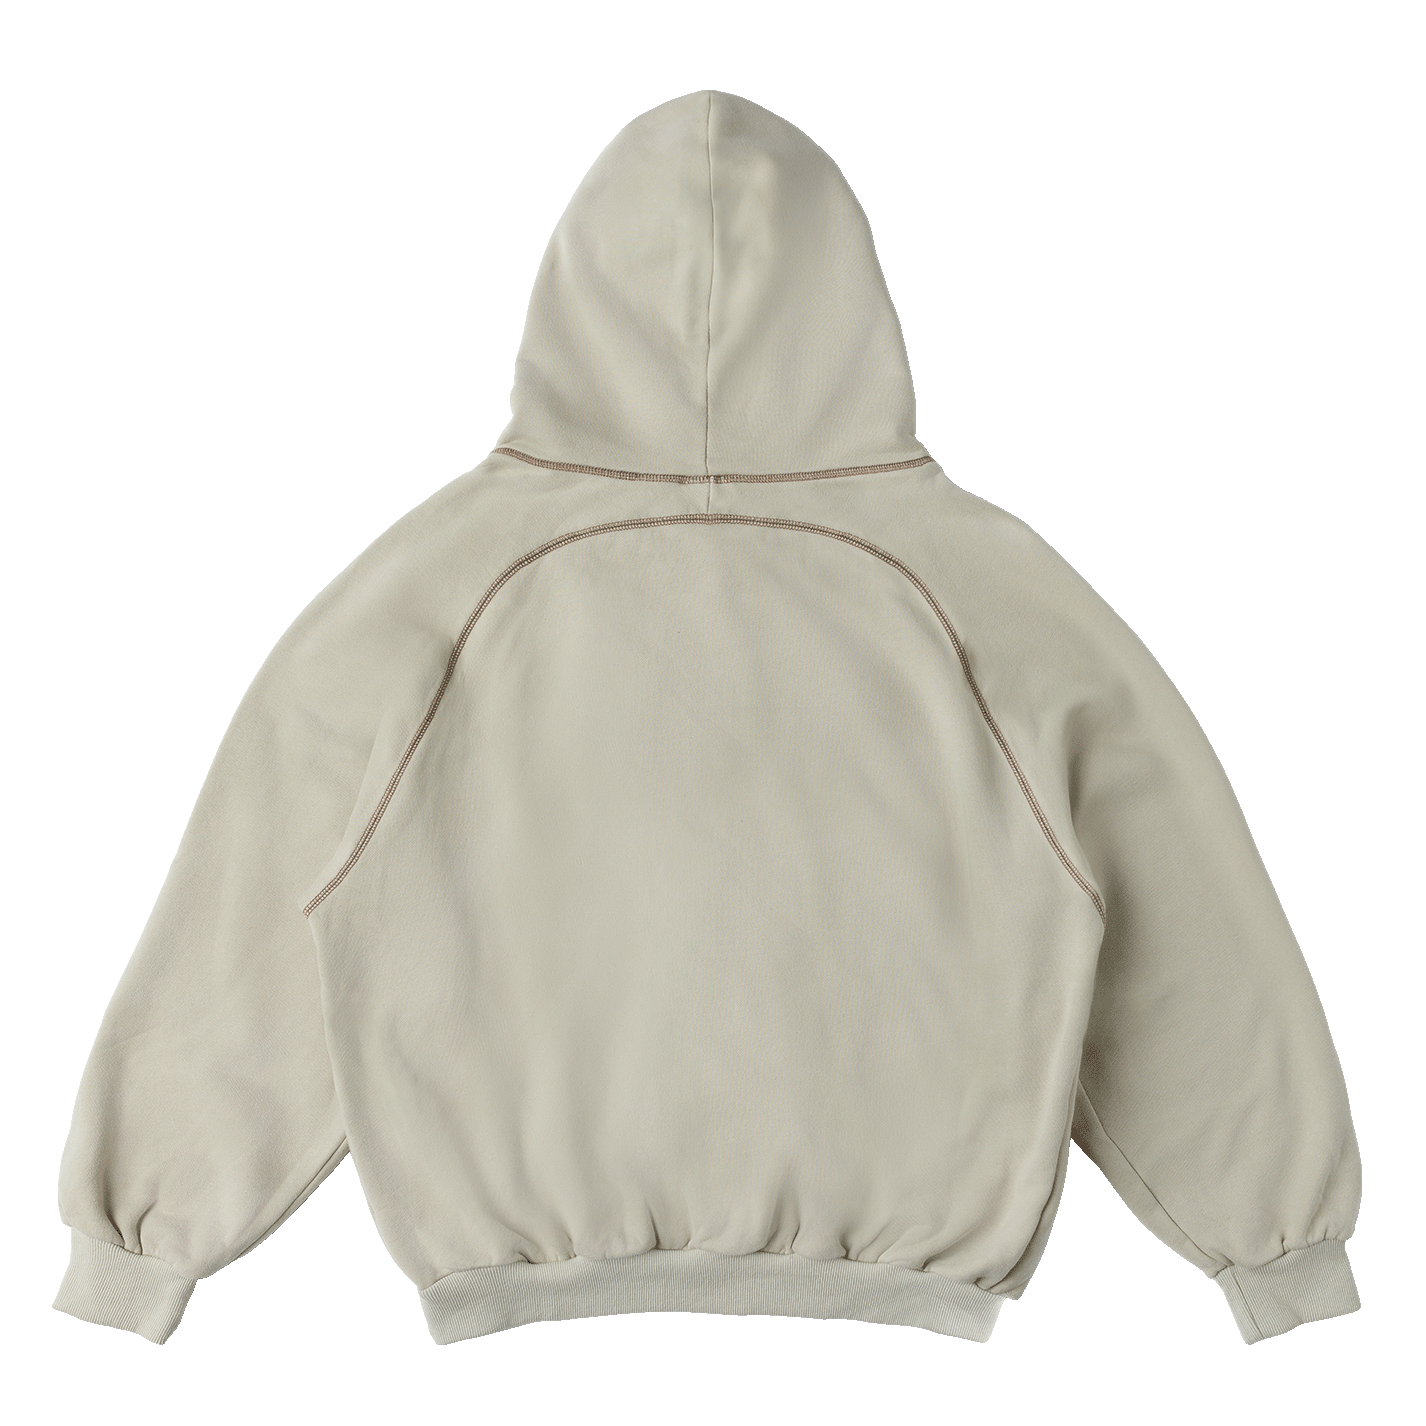 nook hoodie in light back